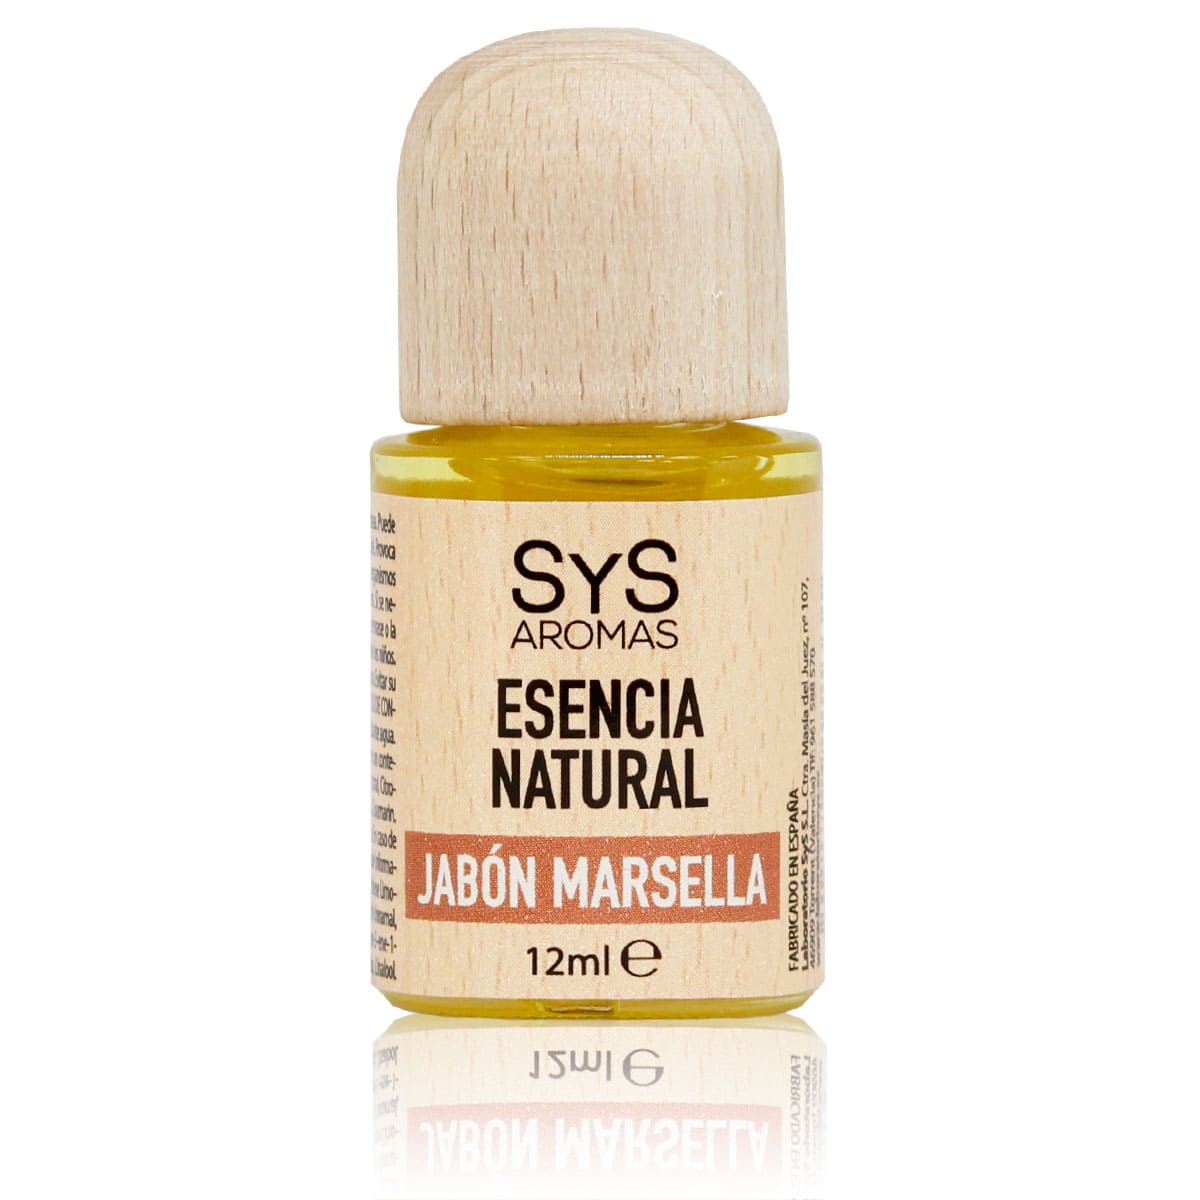 Buy Marseille Soap Essence 12ml SYS Aromas